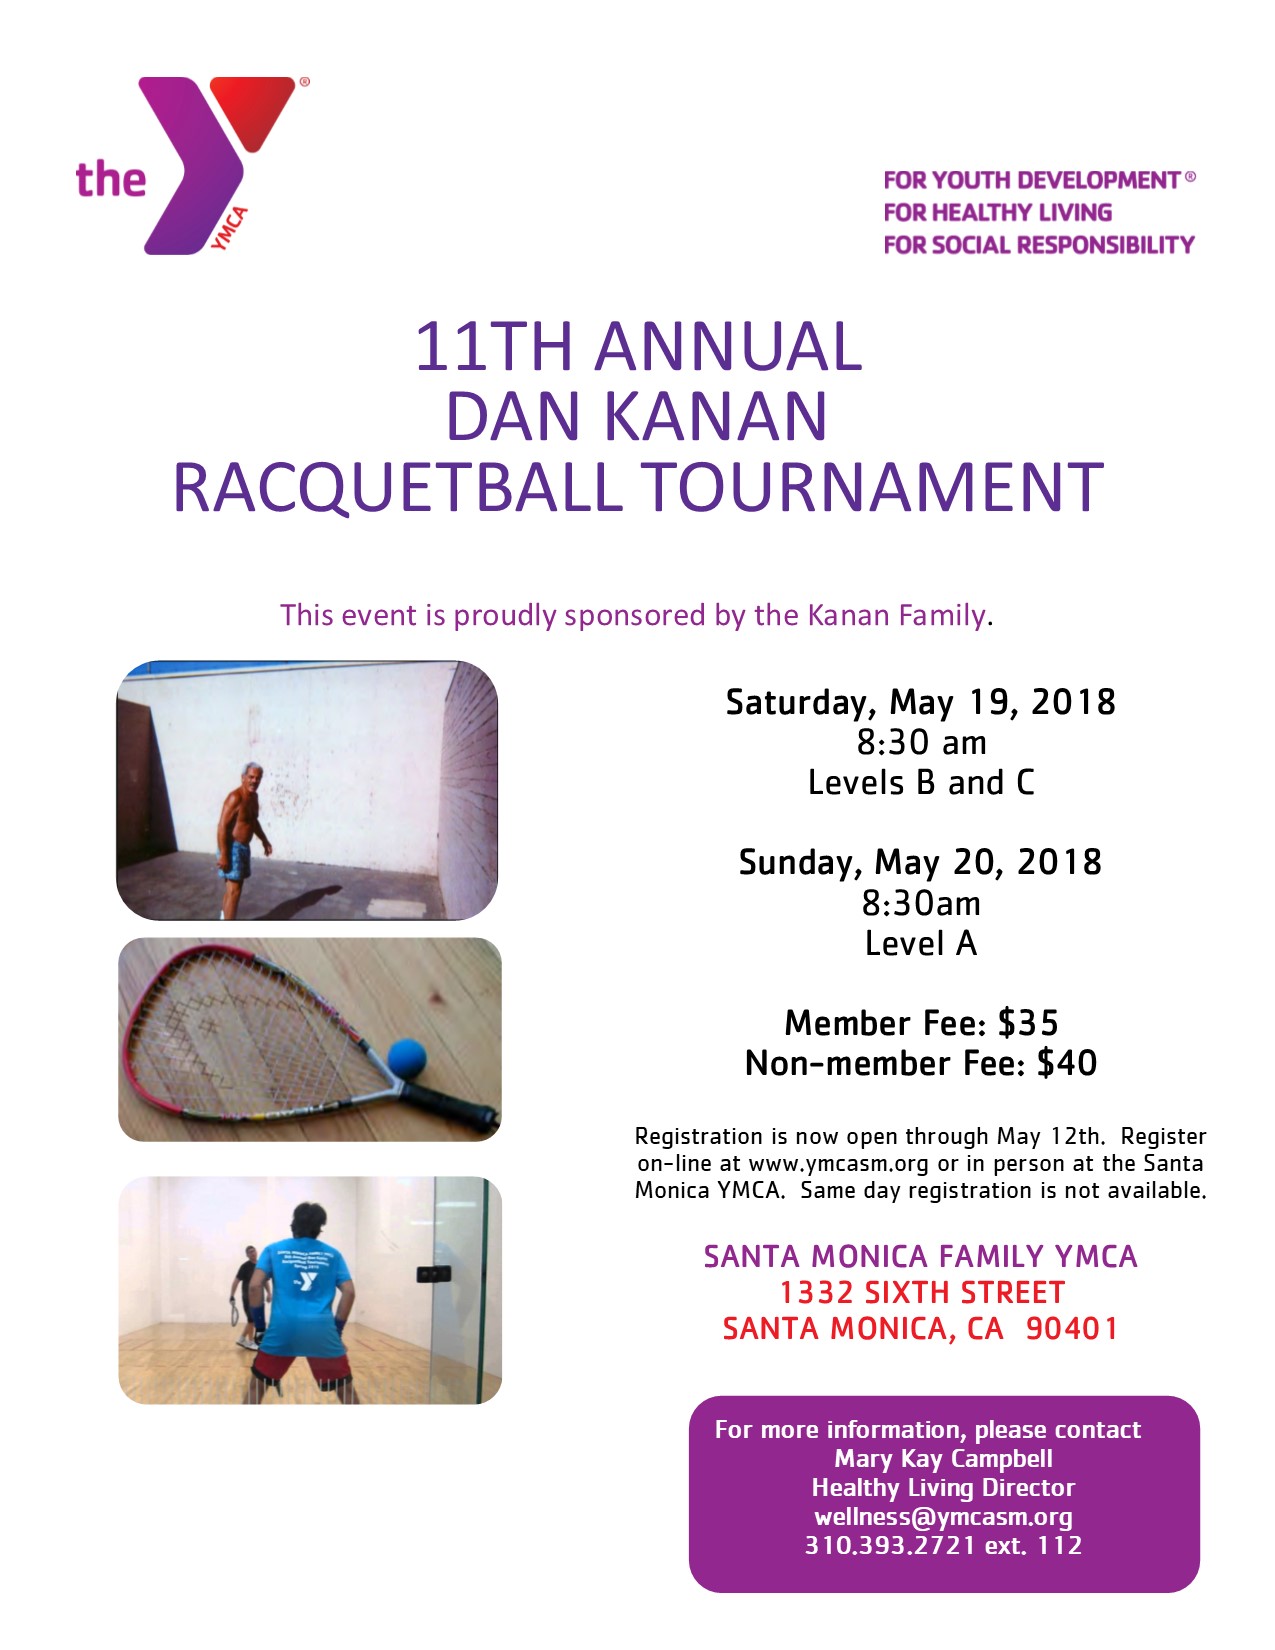 11th Annual Dan Kanan Racquetball Tournament